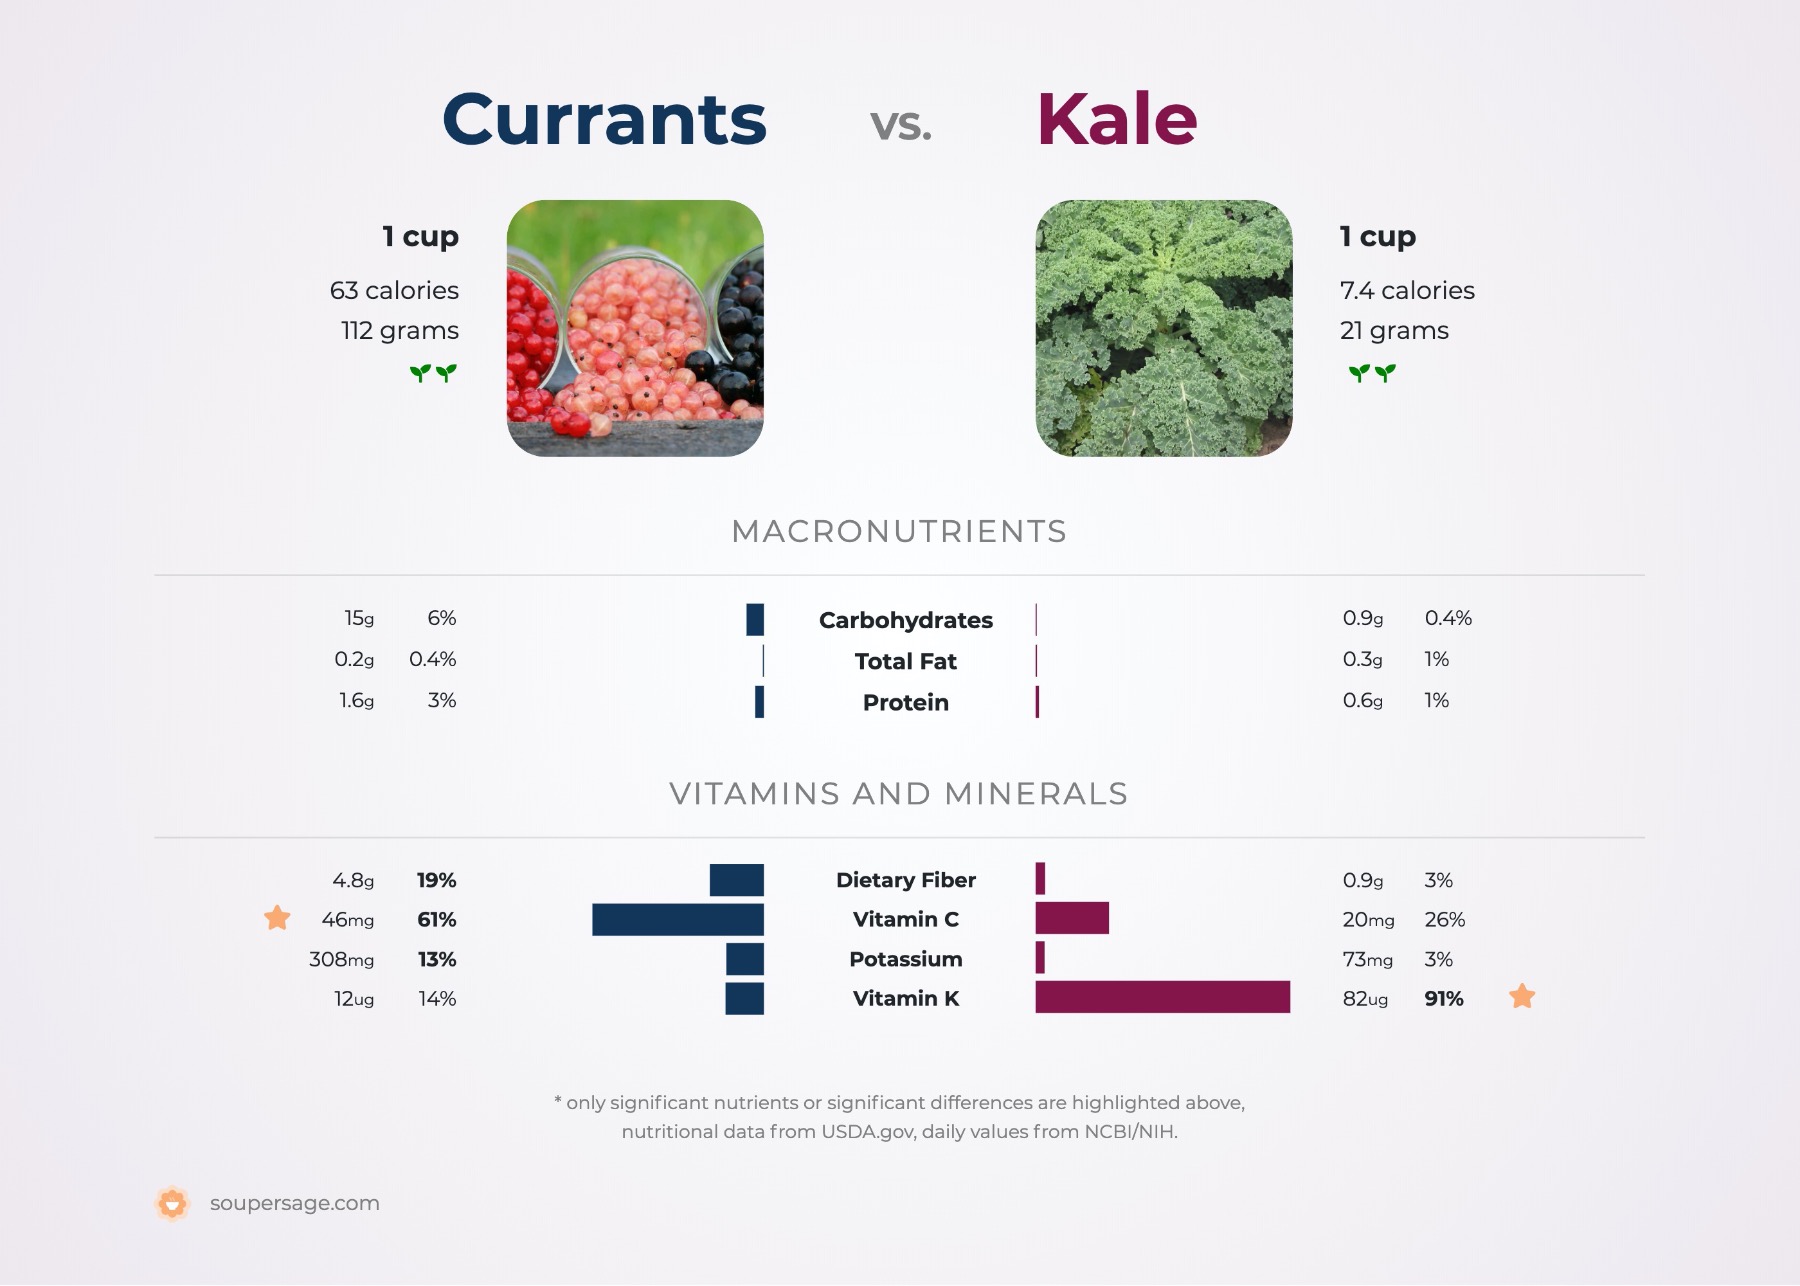 nutrition comparison of currants vs. kale